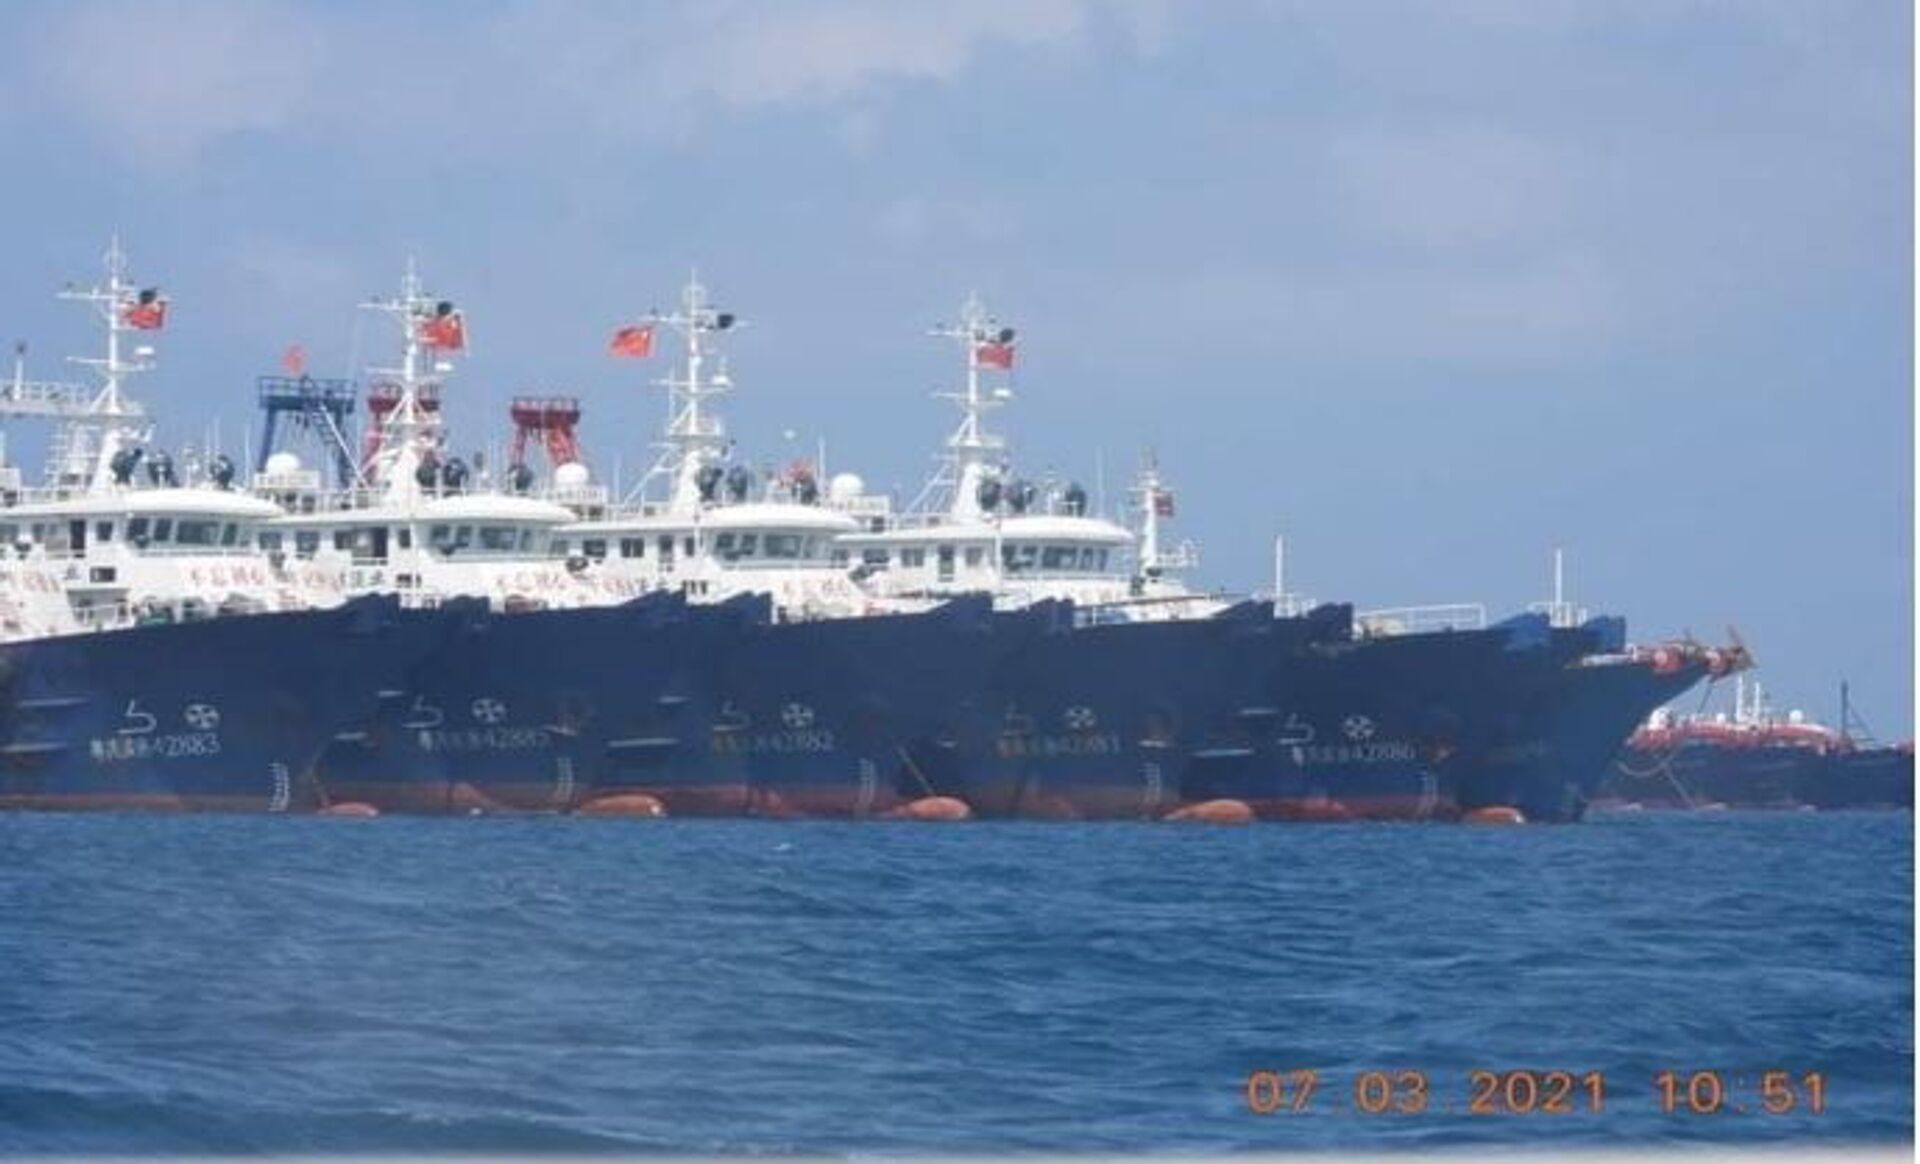 Barcos chineses mantêm presença constante no disputado recife de Whitsun há 2 anos, diz think tank - Sputnik Brasil, 1920, 22.04.2021